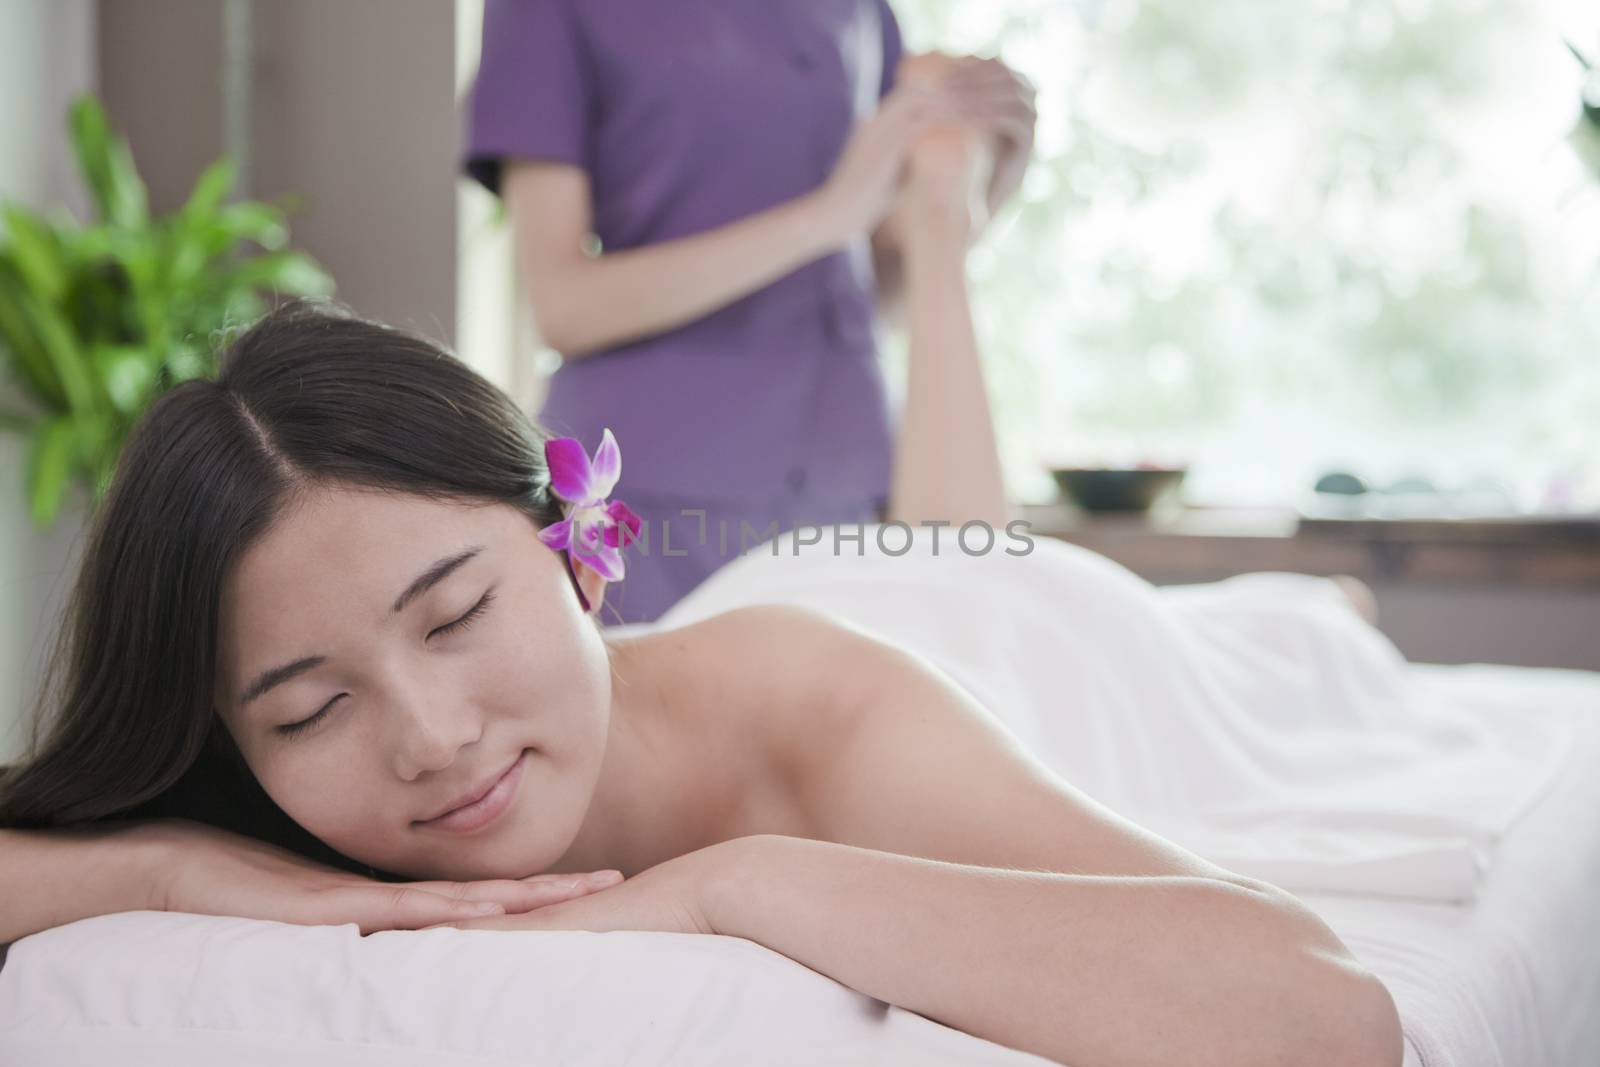 Woman Receiving Foot Massage